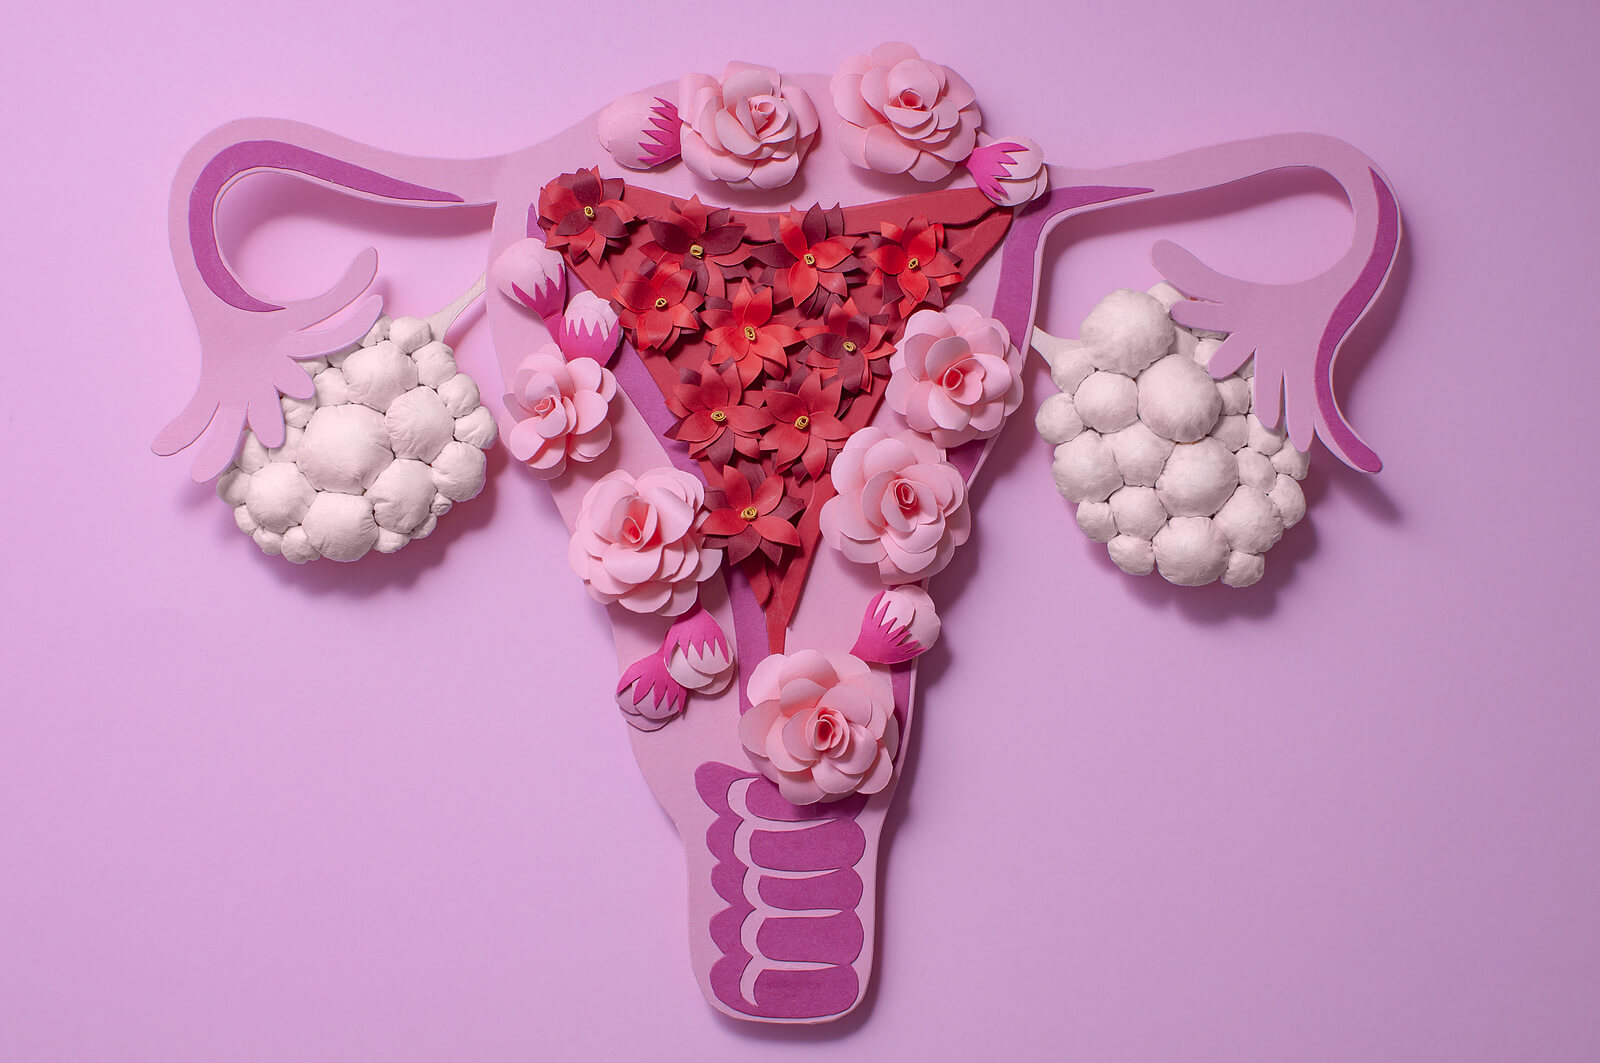 Endometriosi e infertilità: cause anatomiche e funzionali